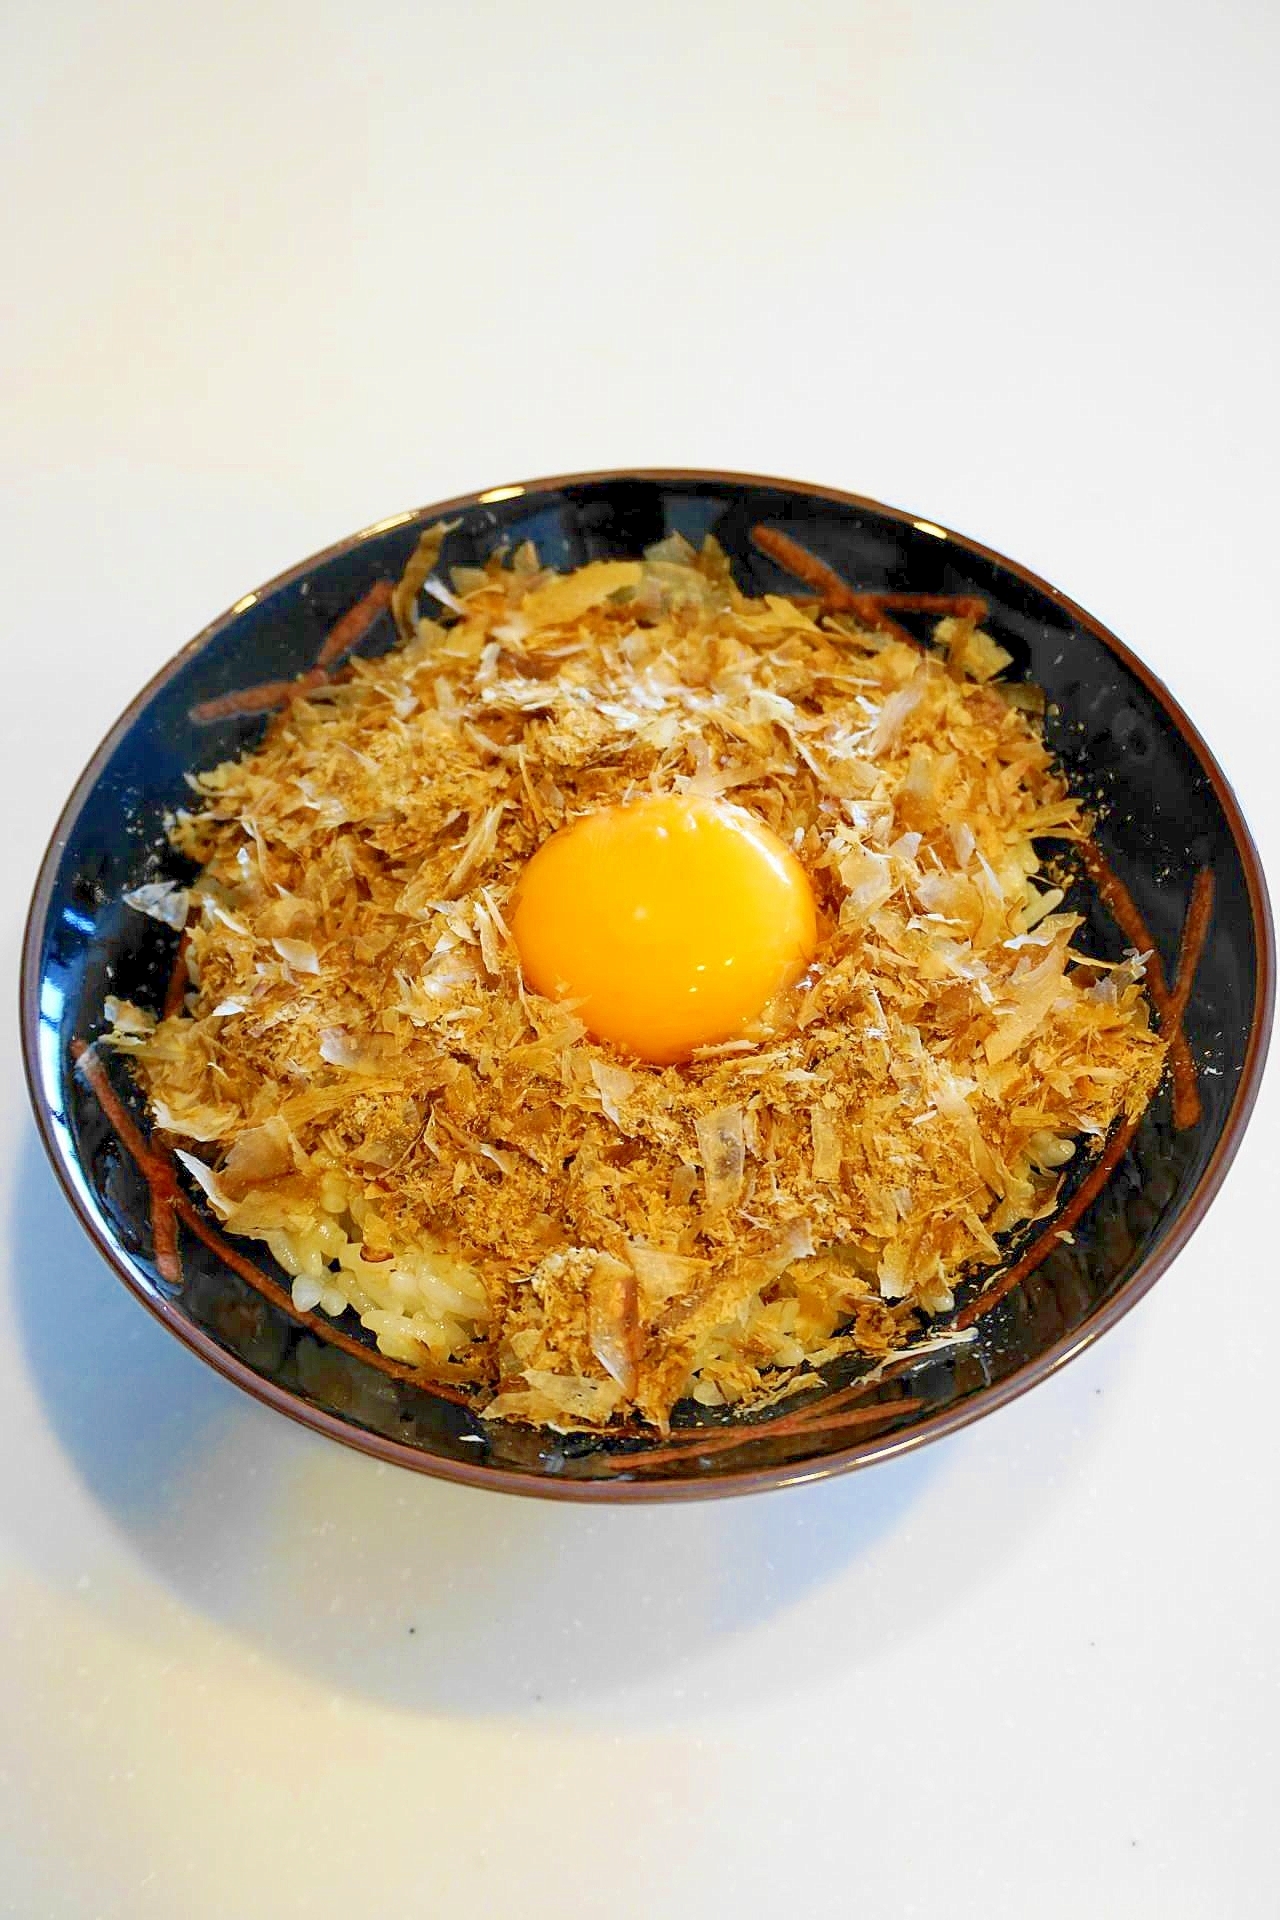 極上のtkgが食べたい時は 削り節がけ卵かけご飯 レシピ 作り方 By Oppeke22 楽天レシピ